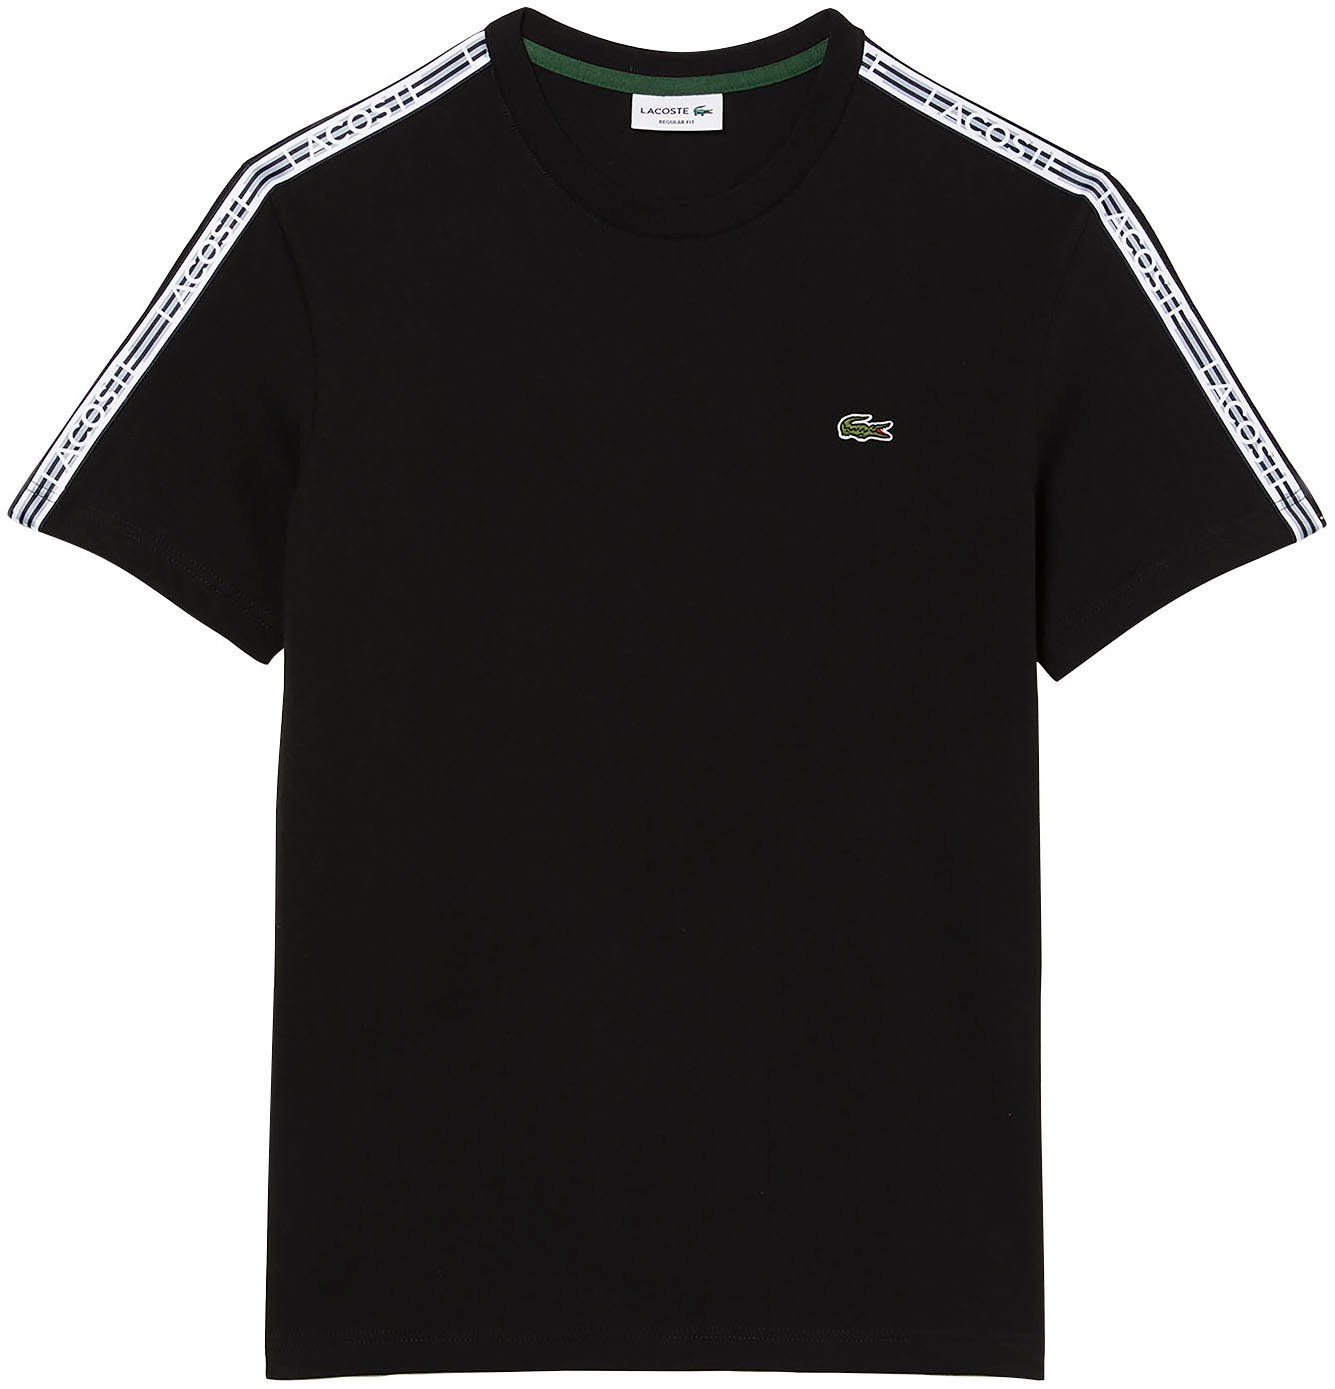 Versandhandel mit großer Produktauswahl Schultern Kontrastband T-Shirt an den Lacoste mit black beschriftetem